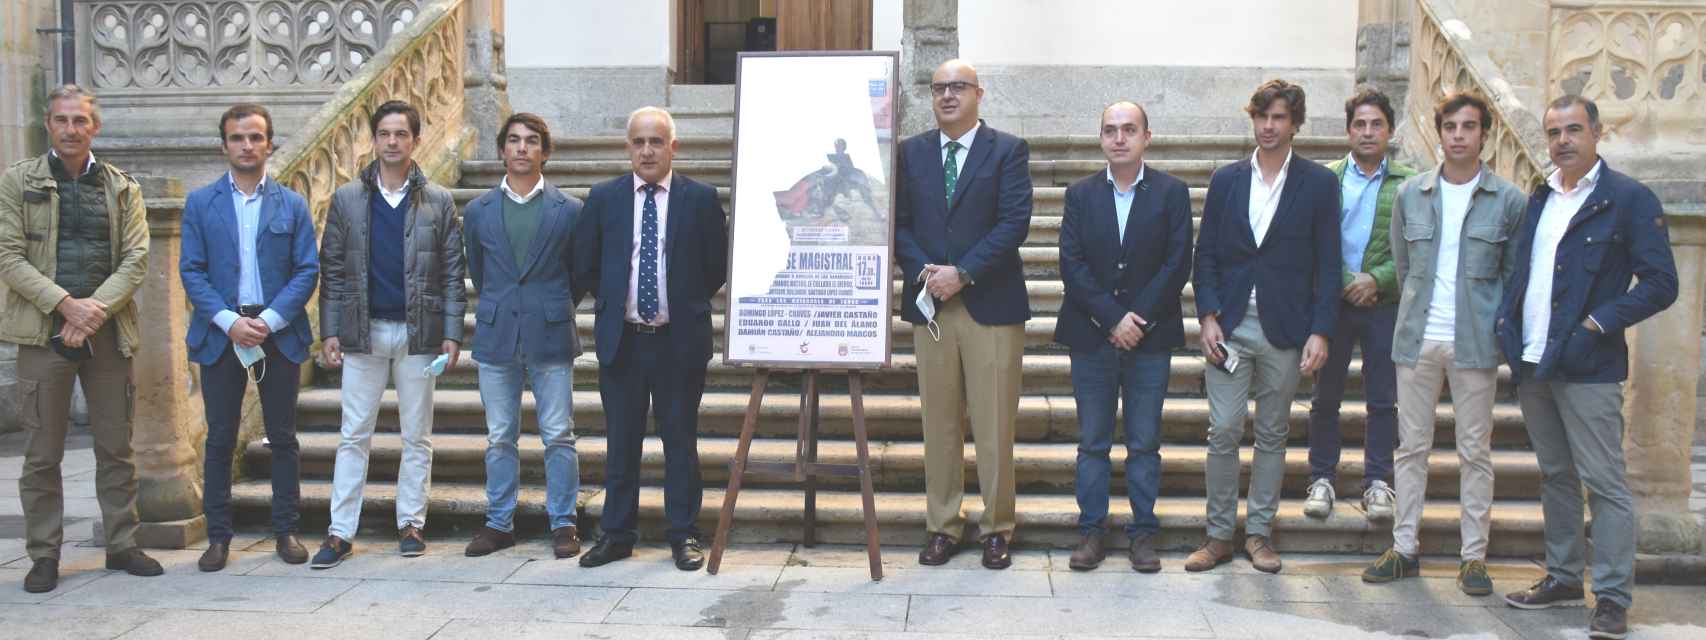 Presentación de la 'Clase Magistral de Alba de Tormes, en la Diputación de Salamanca